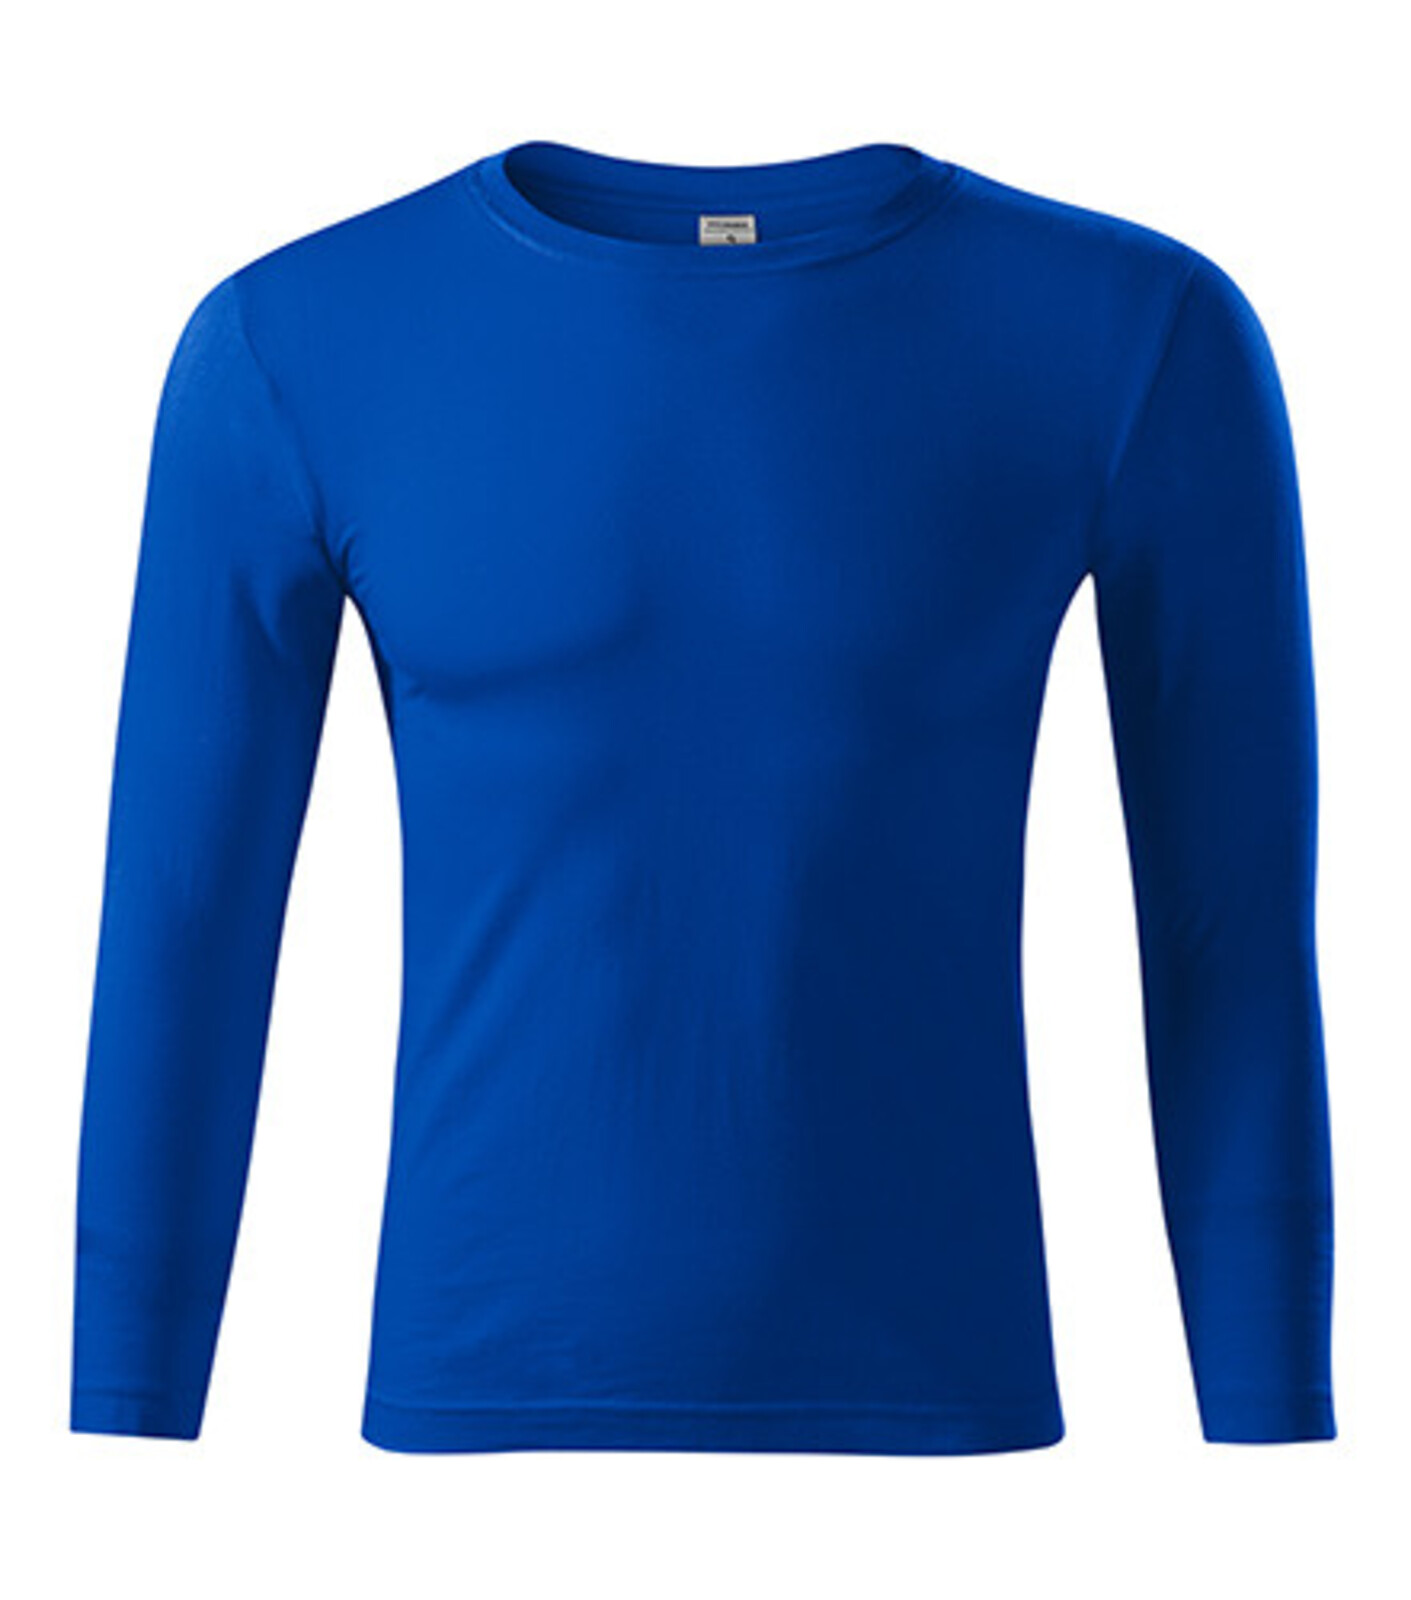 Unisex tričko s dlhým rukávom Progress LS P75 - veľkosť: L, farba: kráľovská modrá